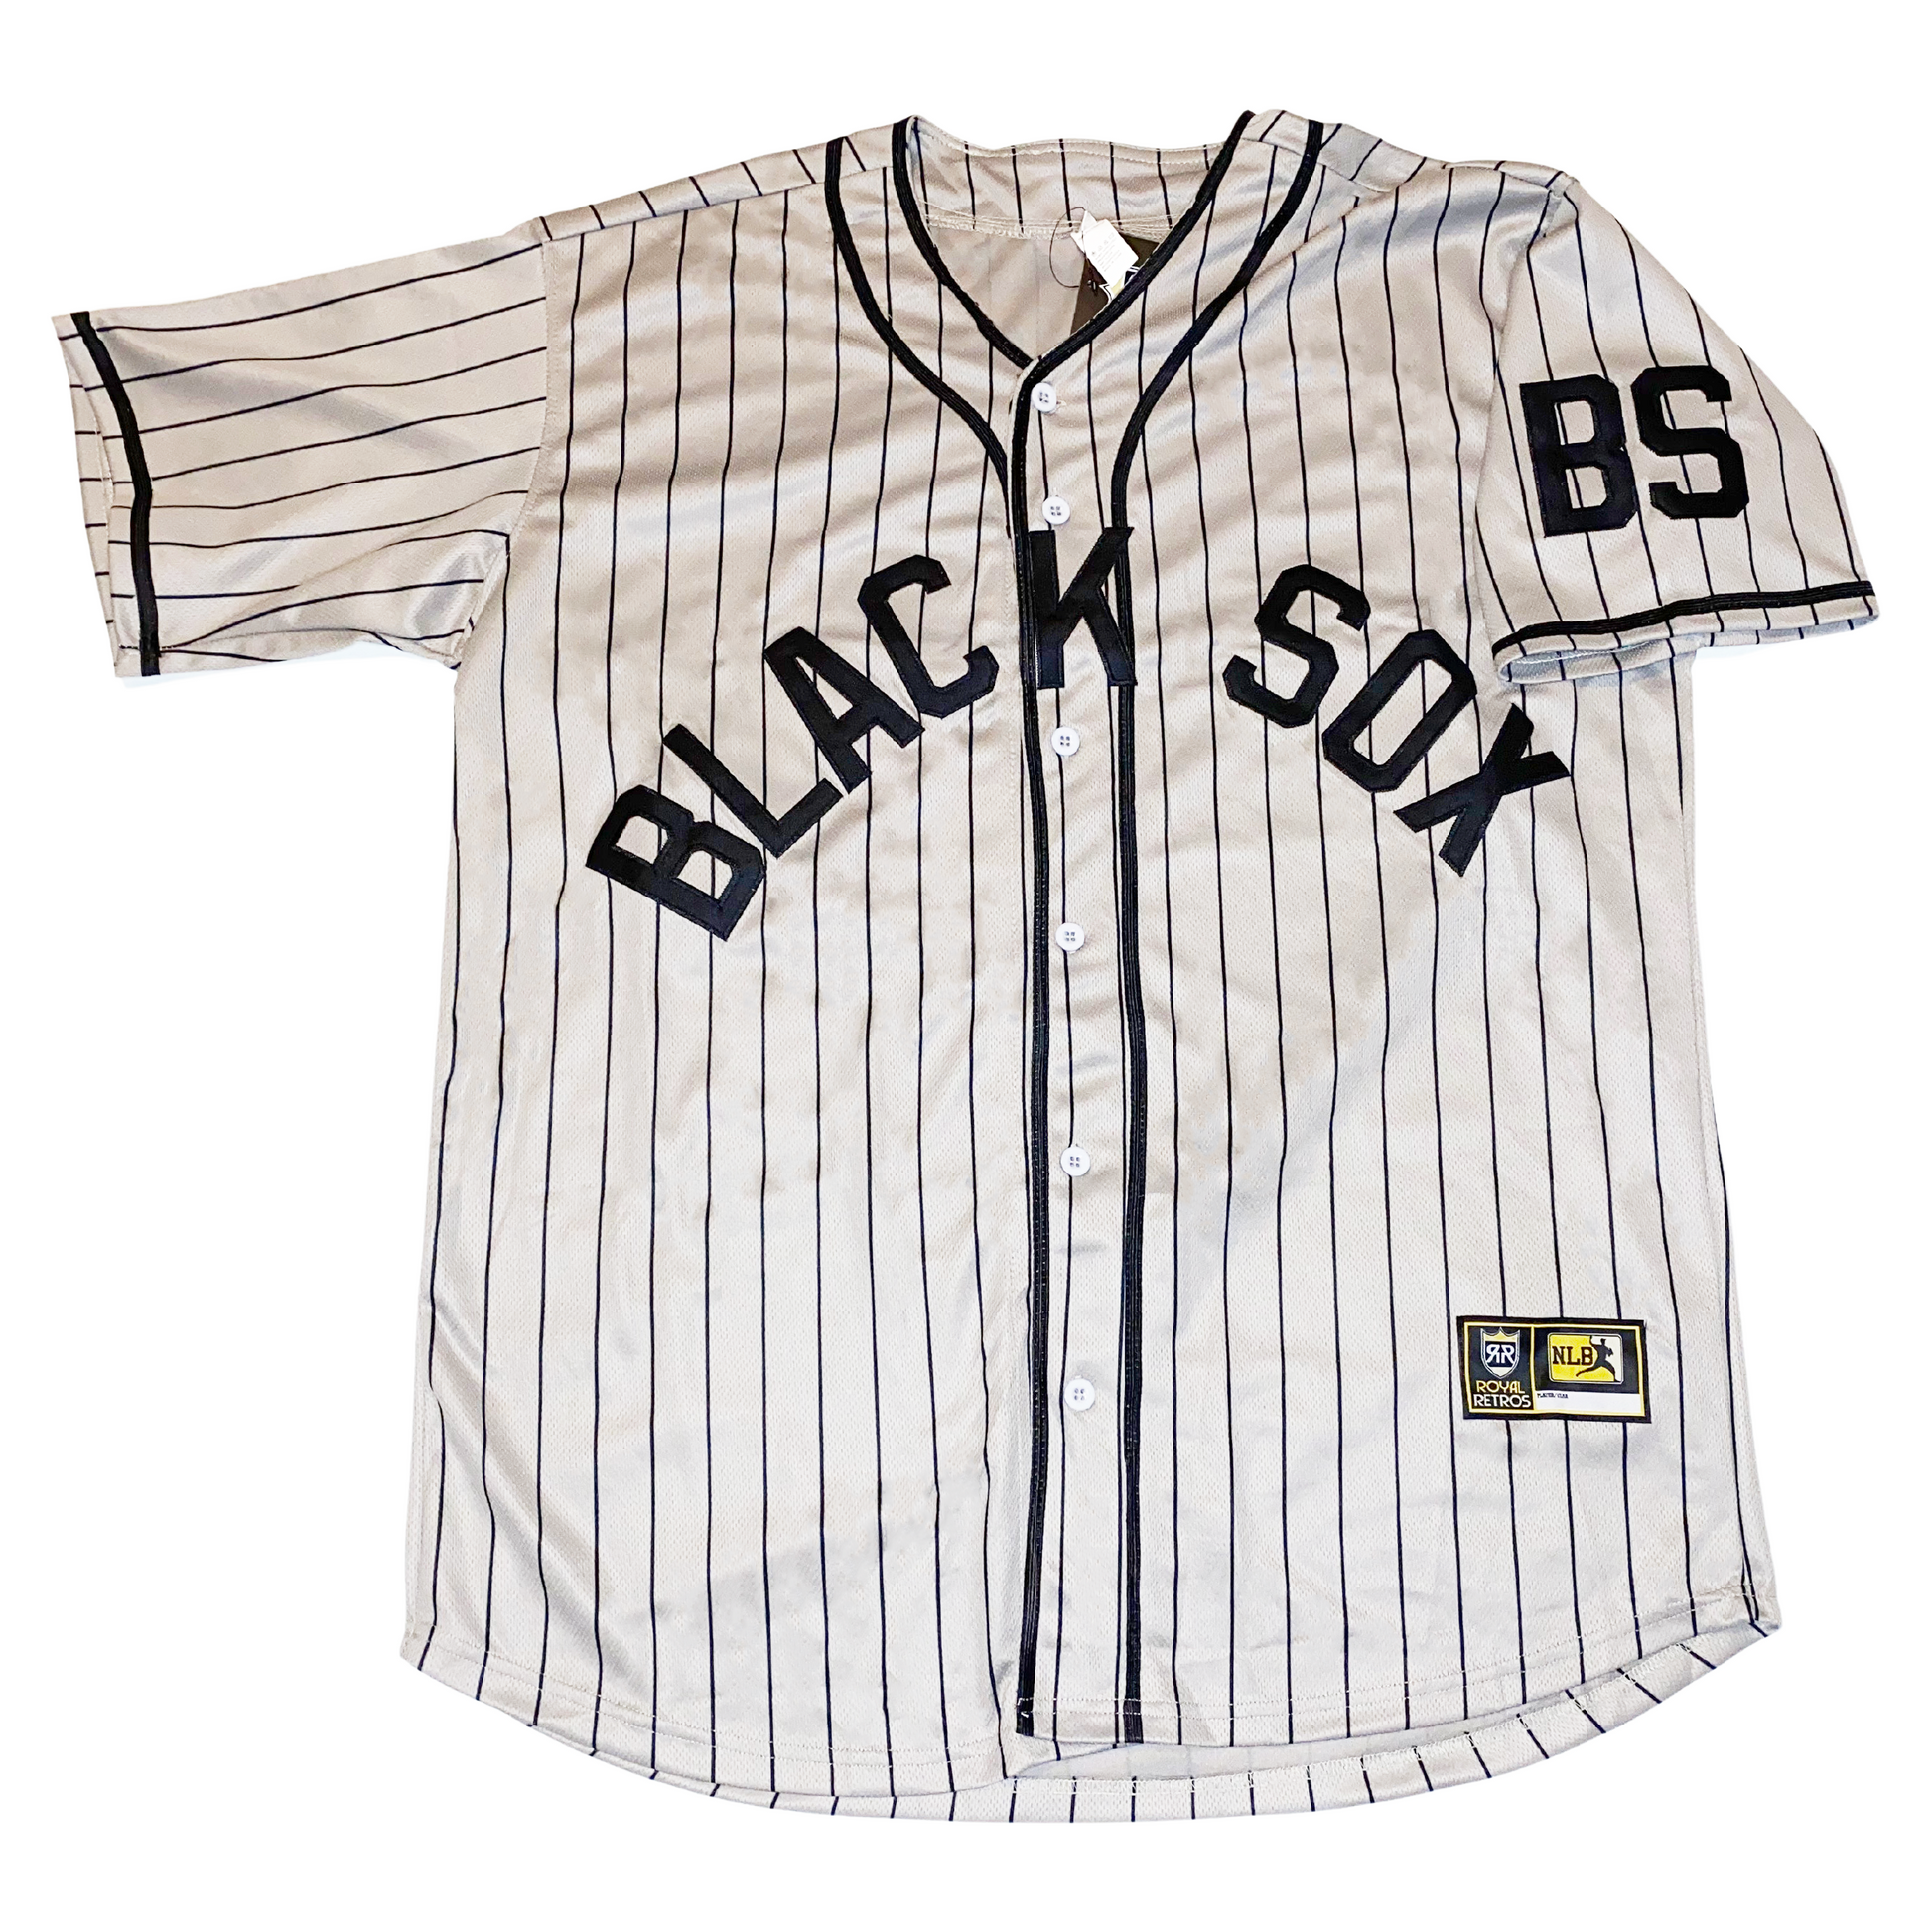 NLBM Negro League Baseball Jersey - NY Black Yankees Gray